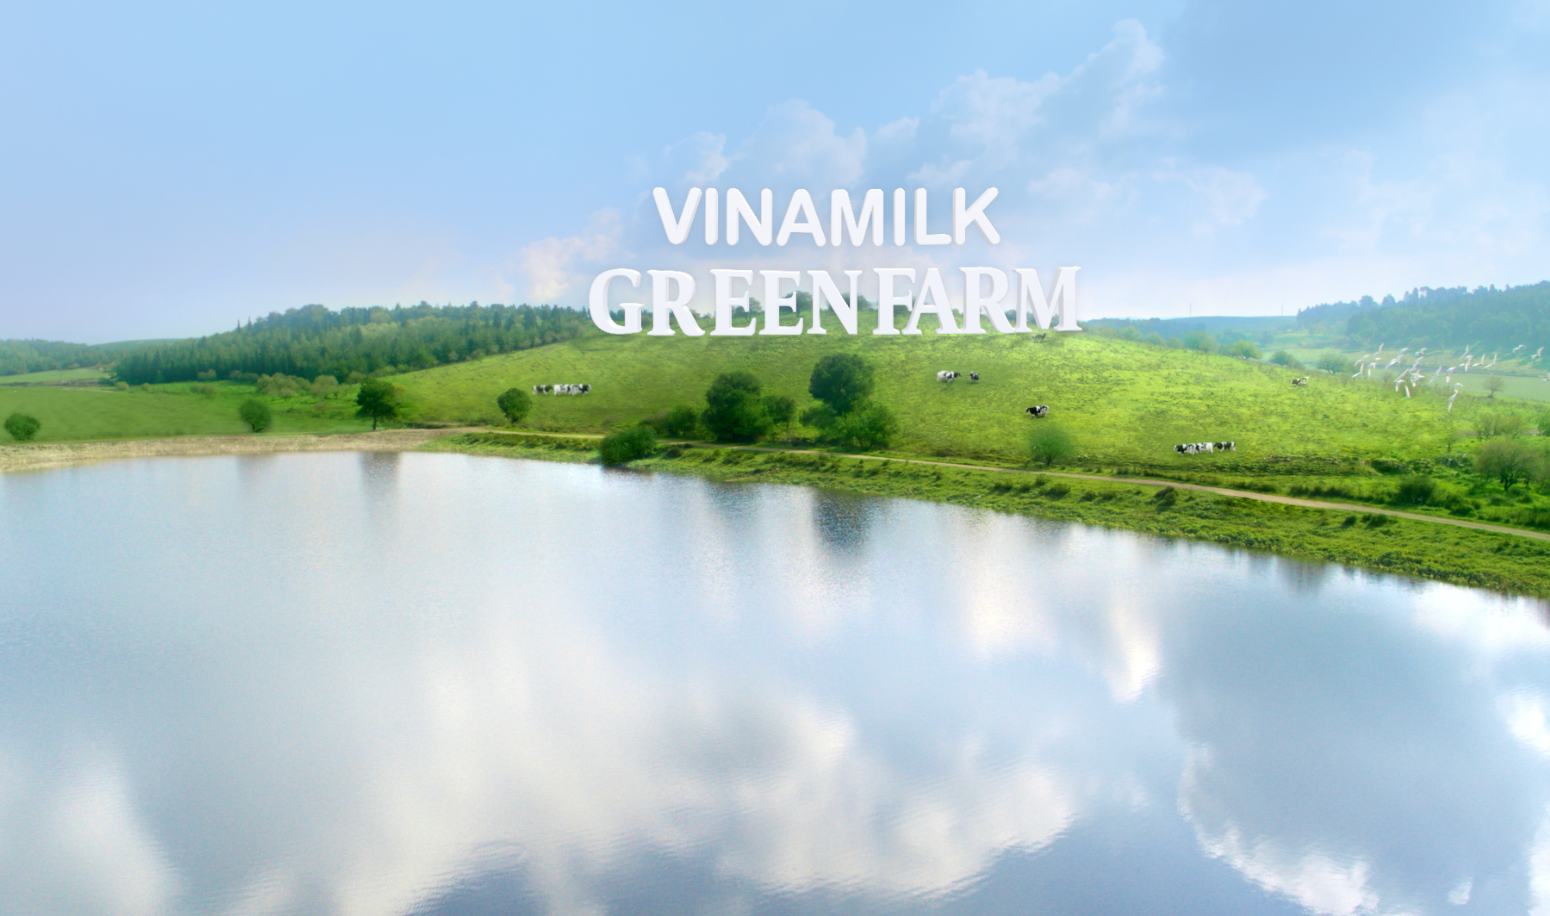 Mô hình trang trại sinh thái Green Farm là bước tiến của Vinamilk trong quá trình phát triển chăn nuôi bò sữa theo hướng bền vững